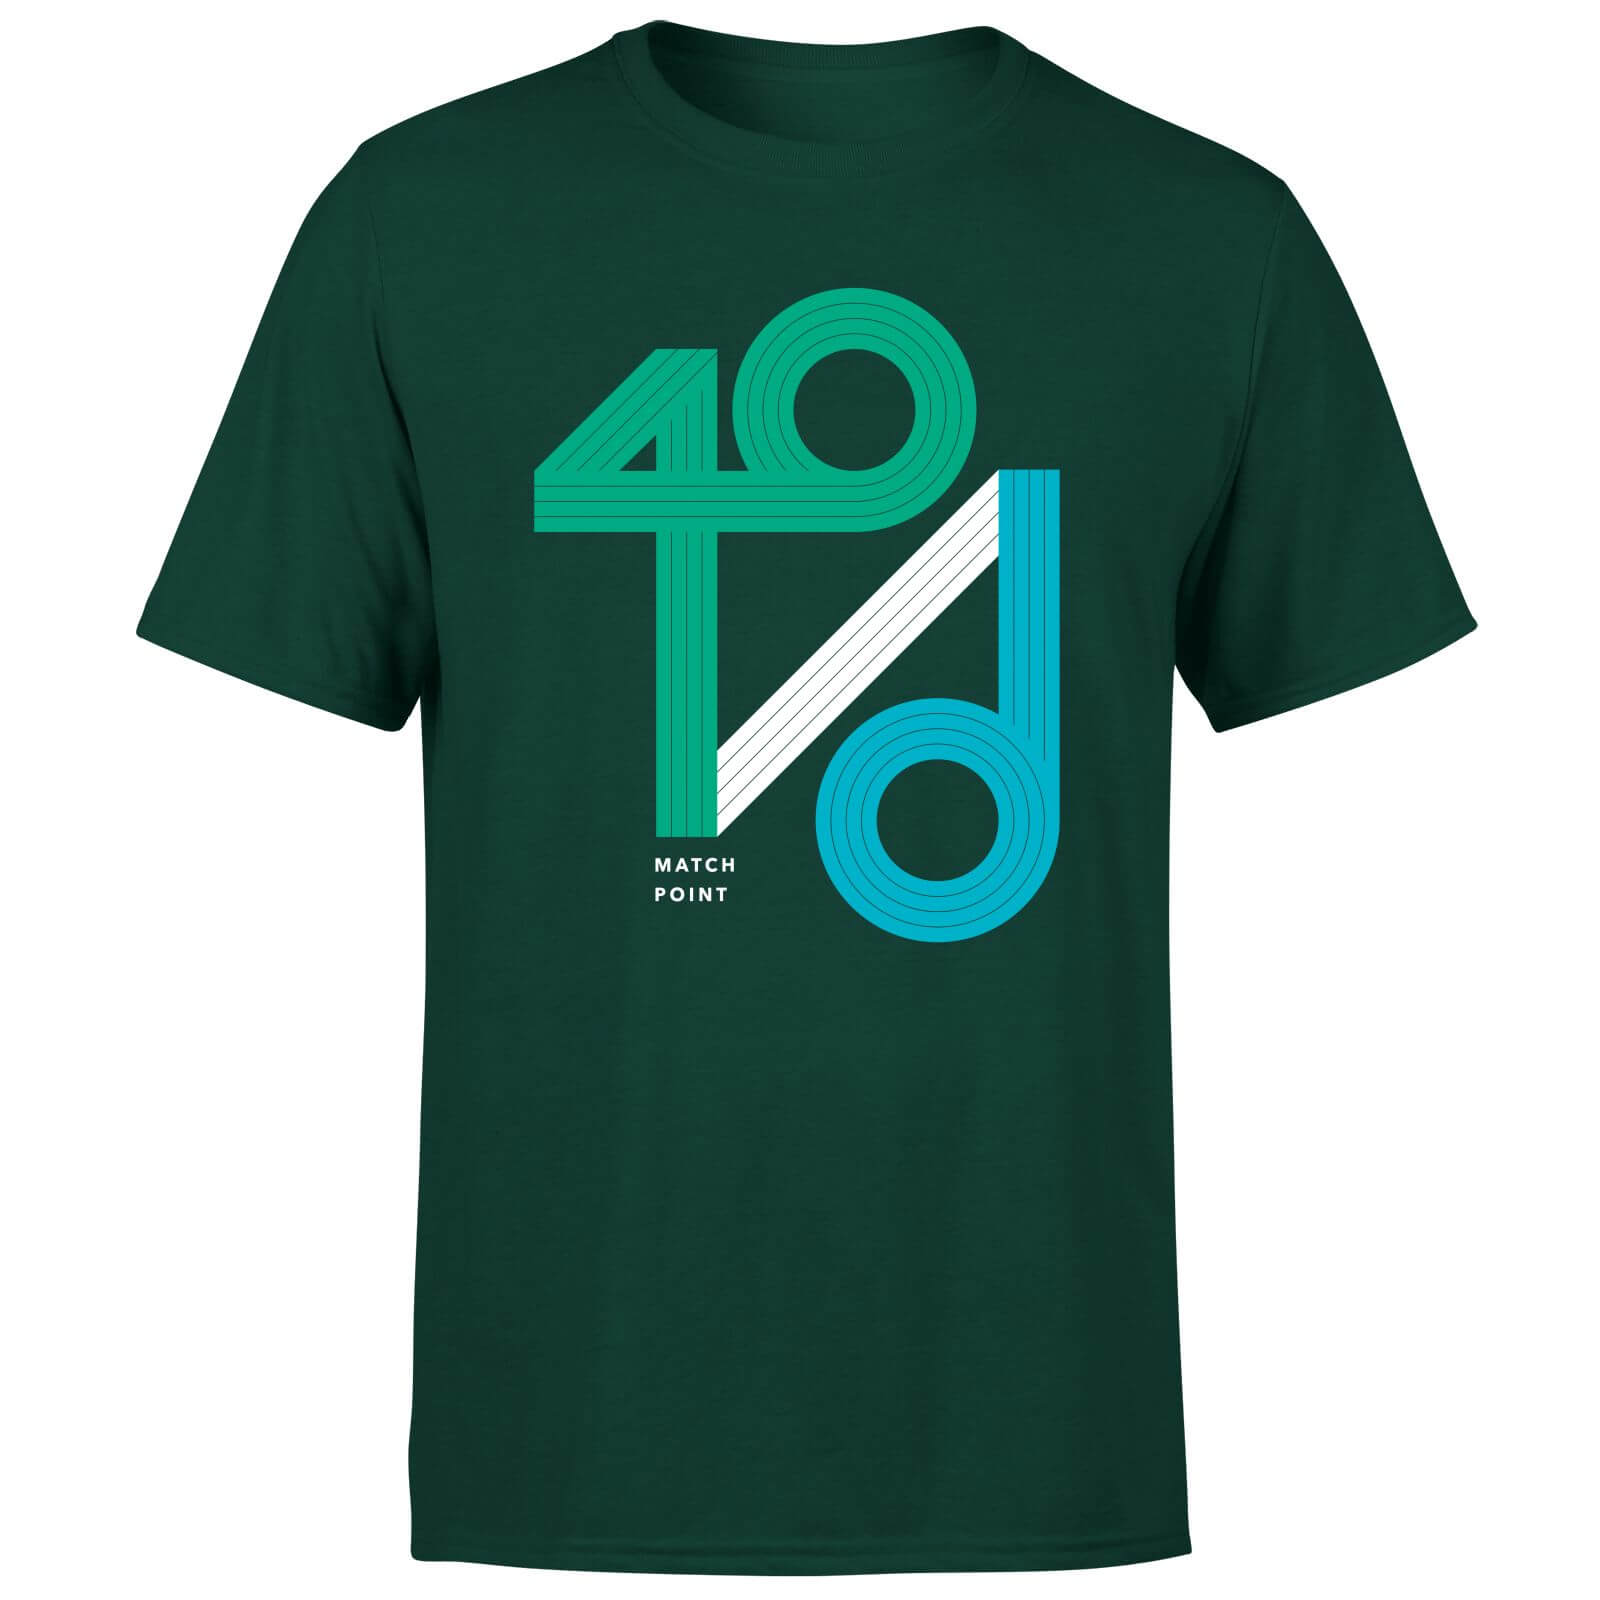 40 / d Match Point T-Shirt - Forest Green - S - Forest Green